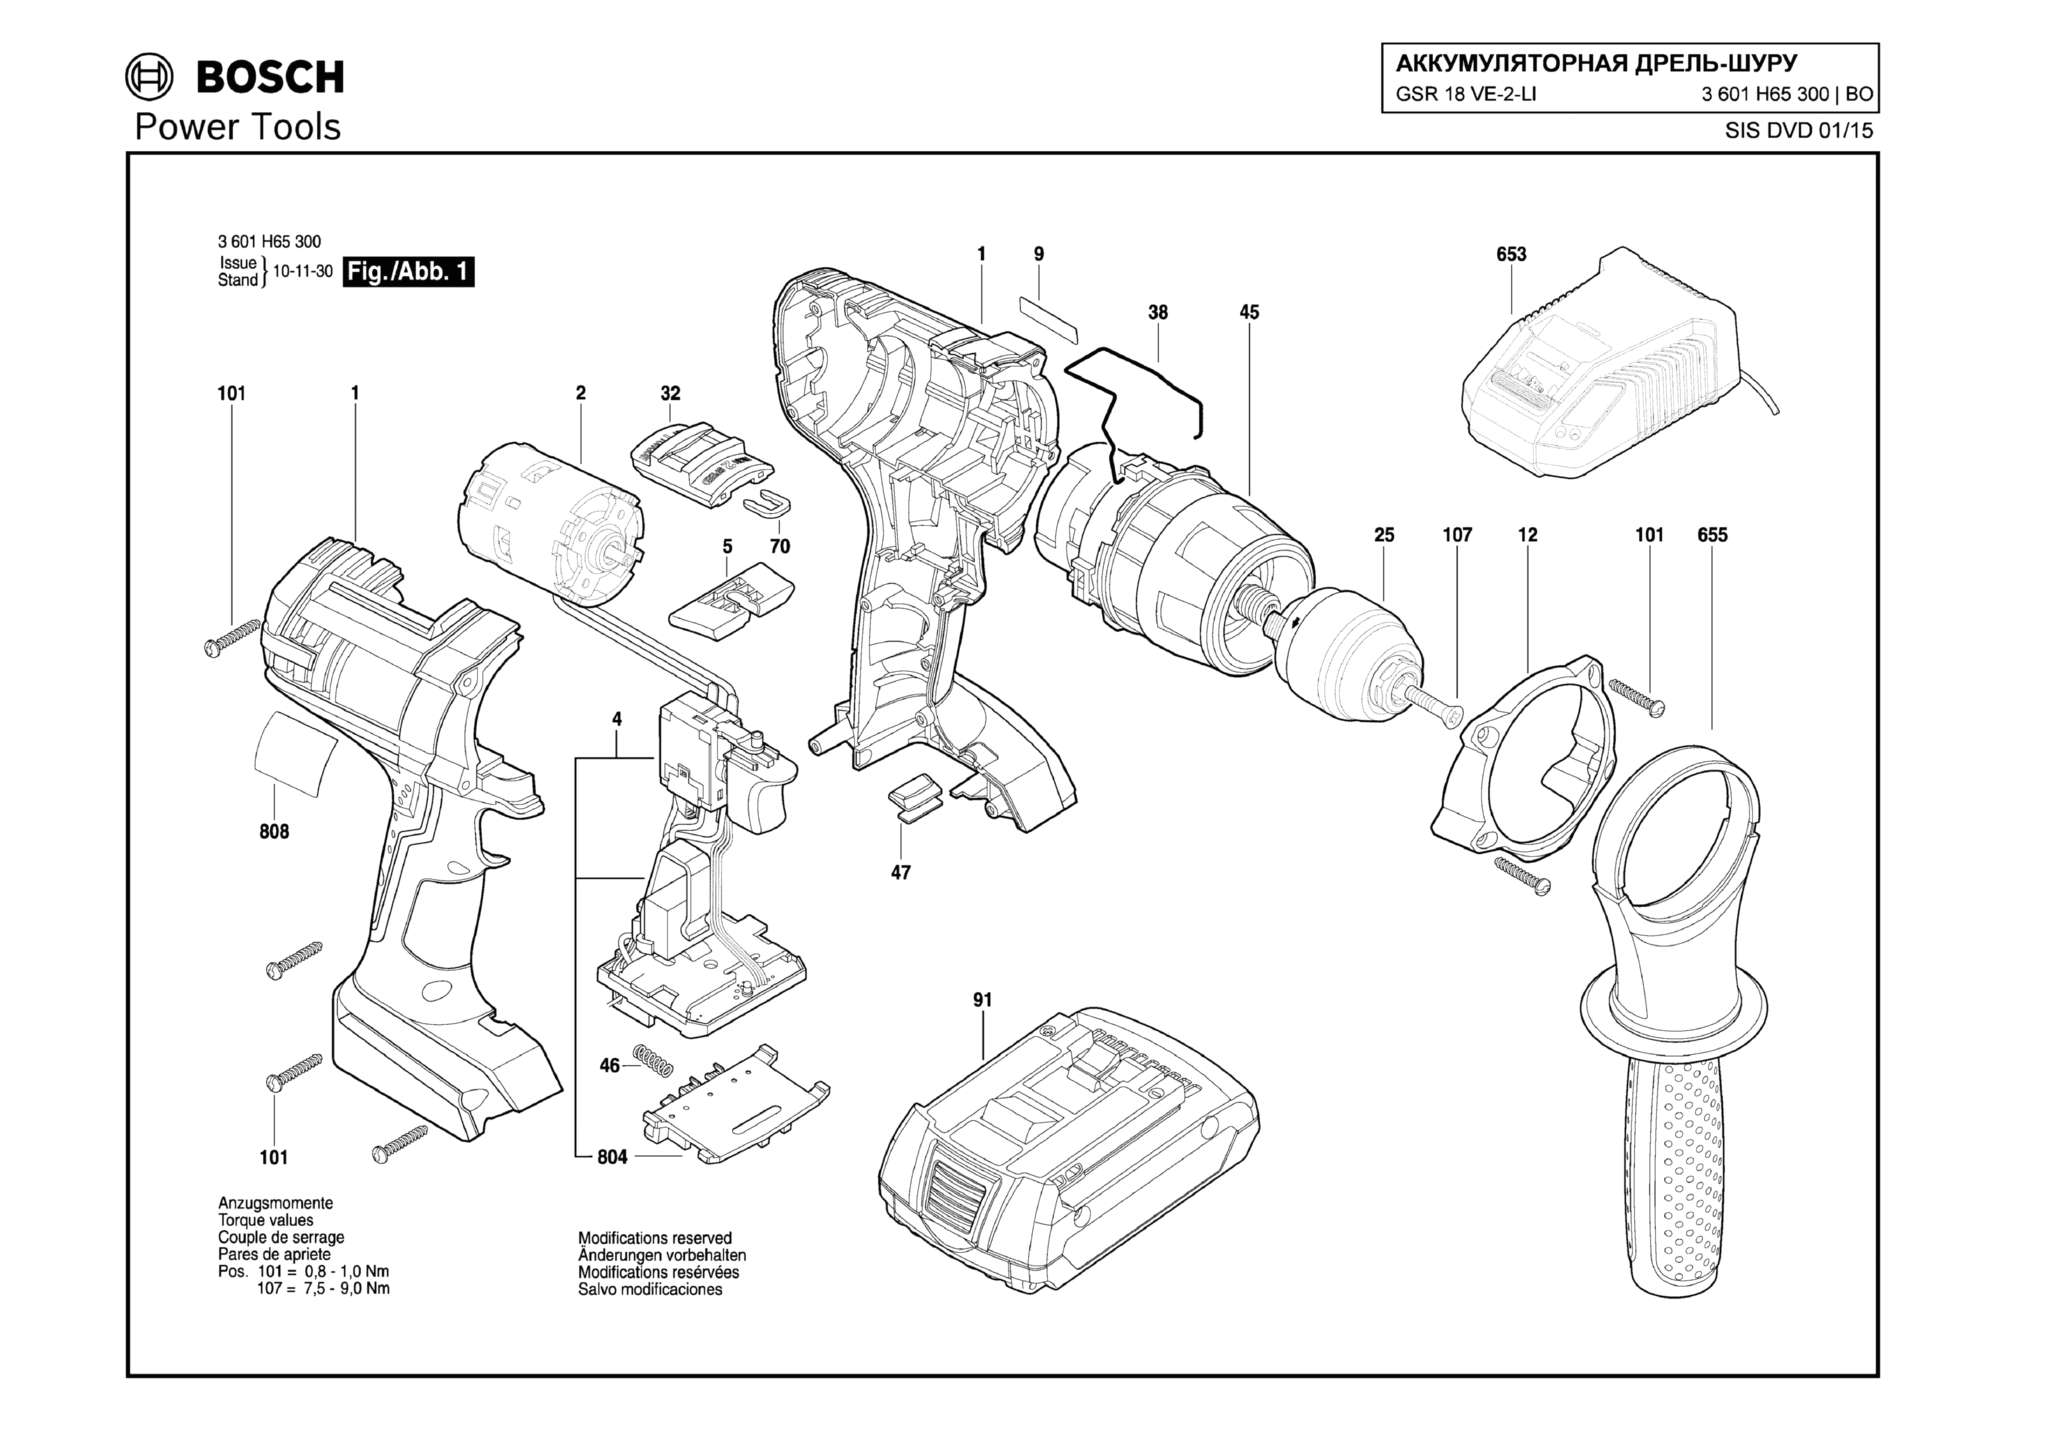 Запчасти, схема и деталировка Bosch GSR 18 VE-2-LI (ТИП 3601H65300)